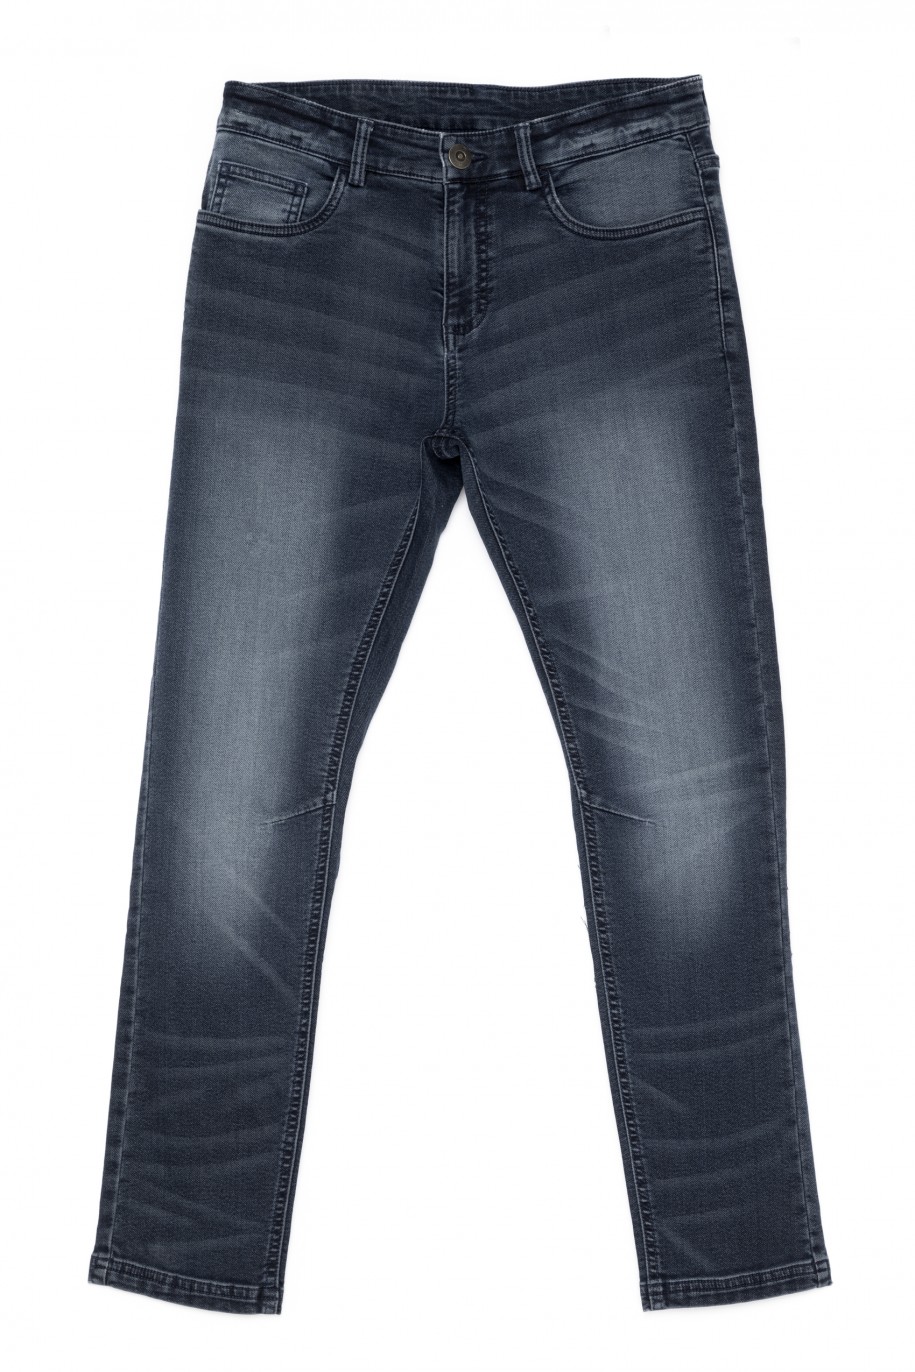 Granatowe spodnie jeansowe dla chłopaka - 30300